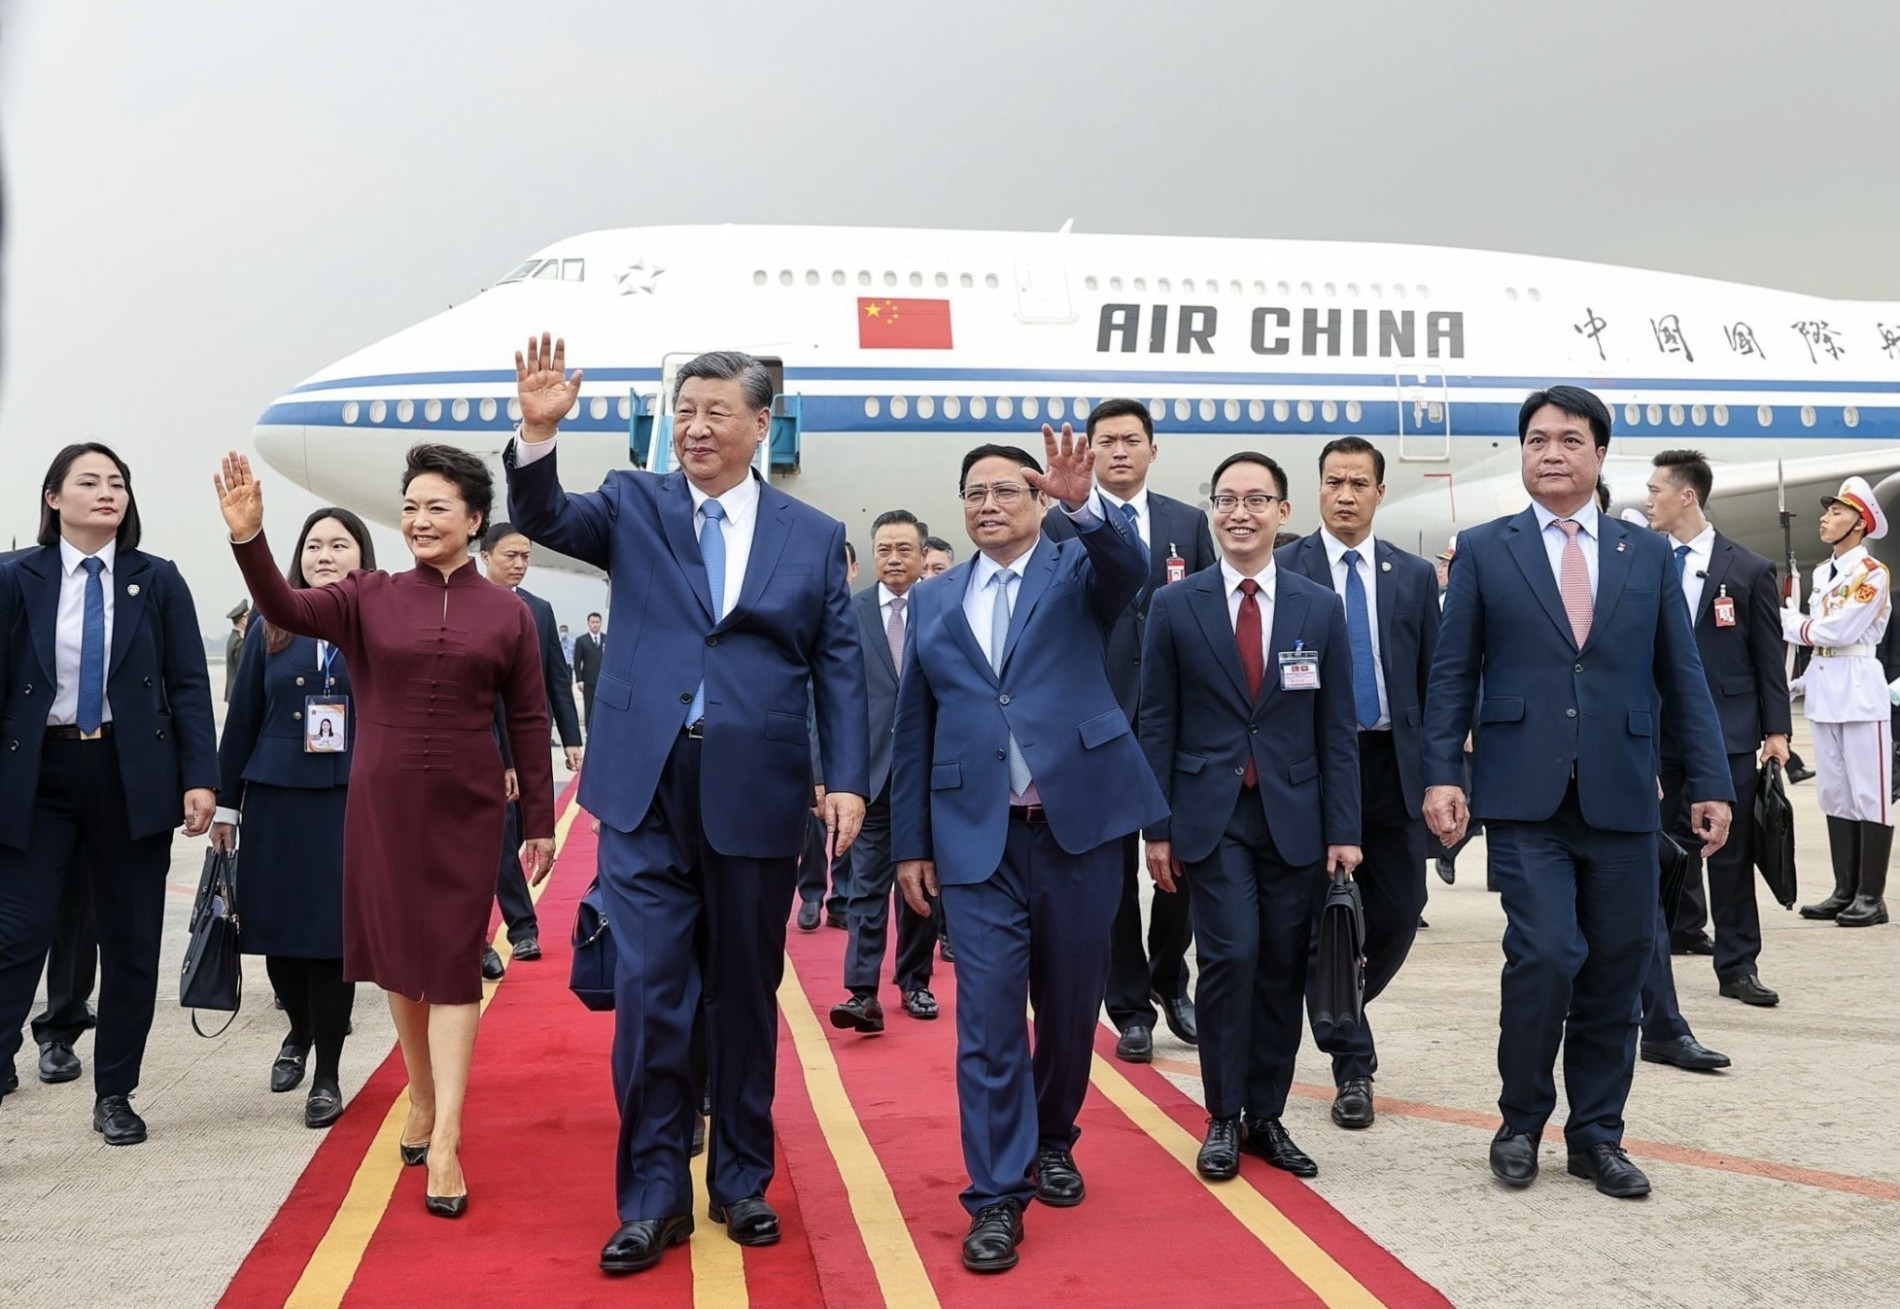 Tổng Bí thư, Chủ tịch nước Trung Quốc Tập Cận Bình đến Hà Nội, bắt đầu chuyến thăm Việt Nam - Ảnh 4.